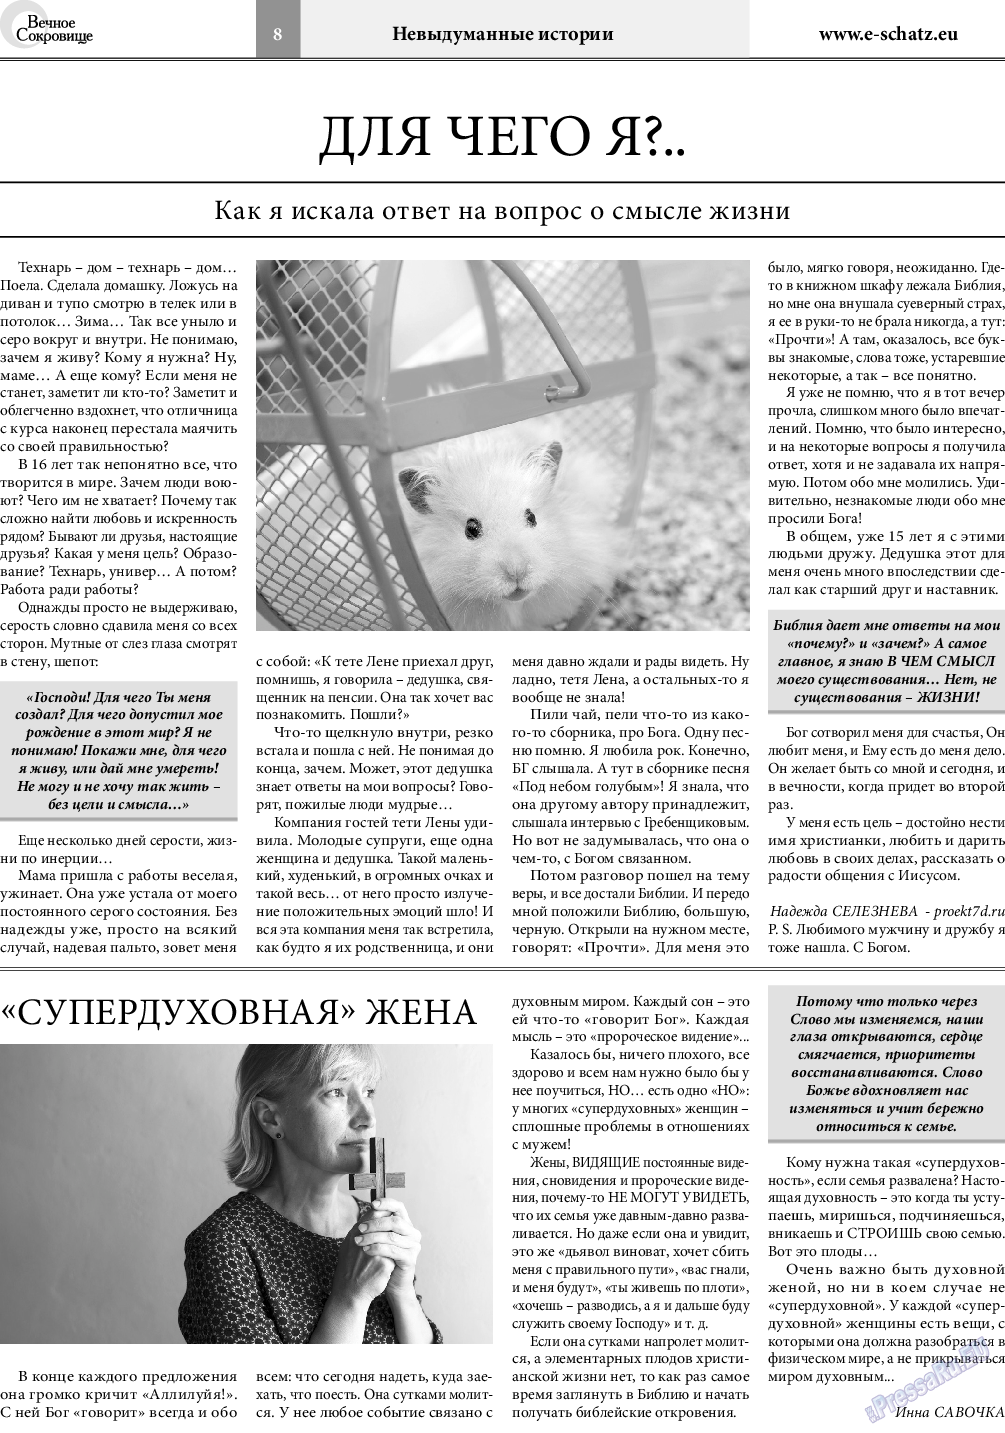 Вечное сокровище, газета. 2019 №5 стр.8